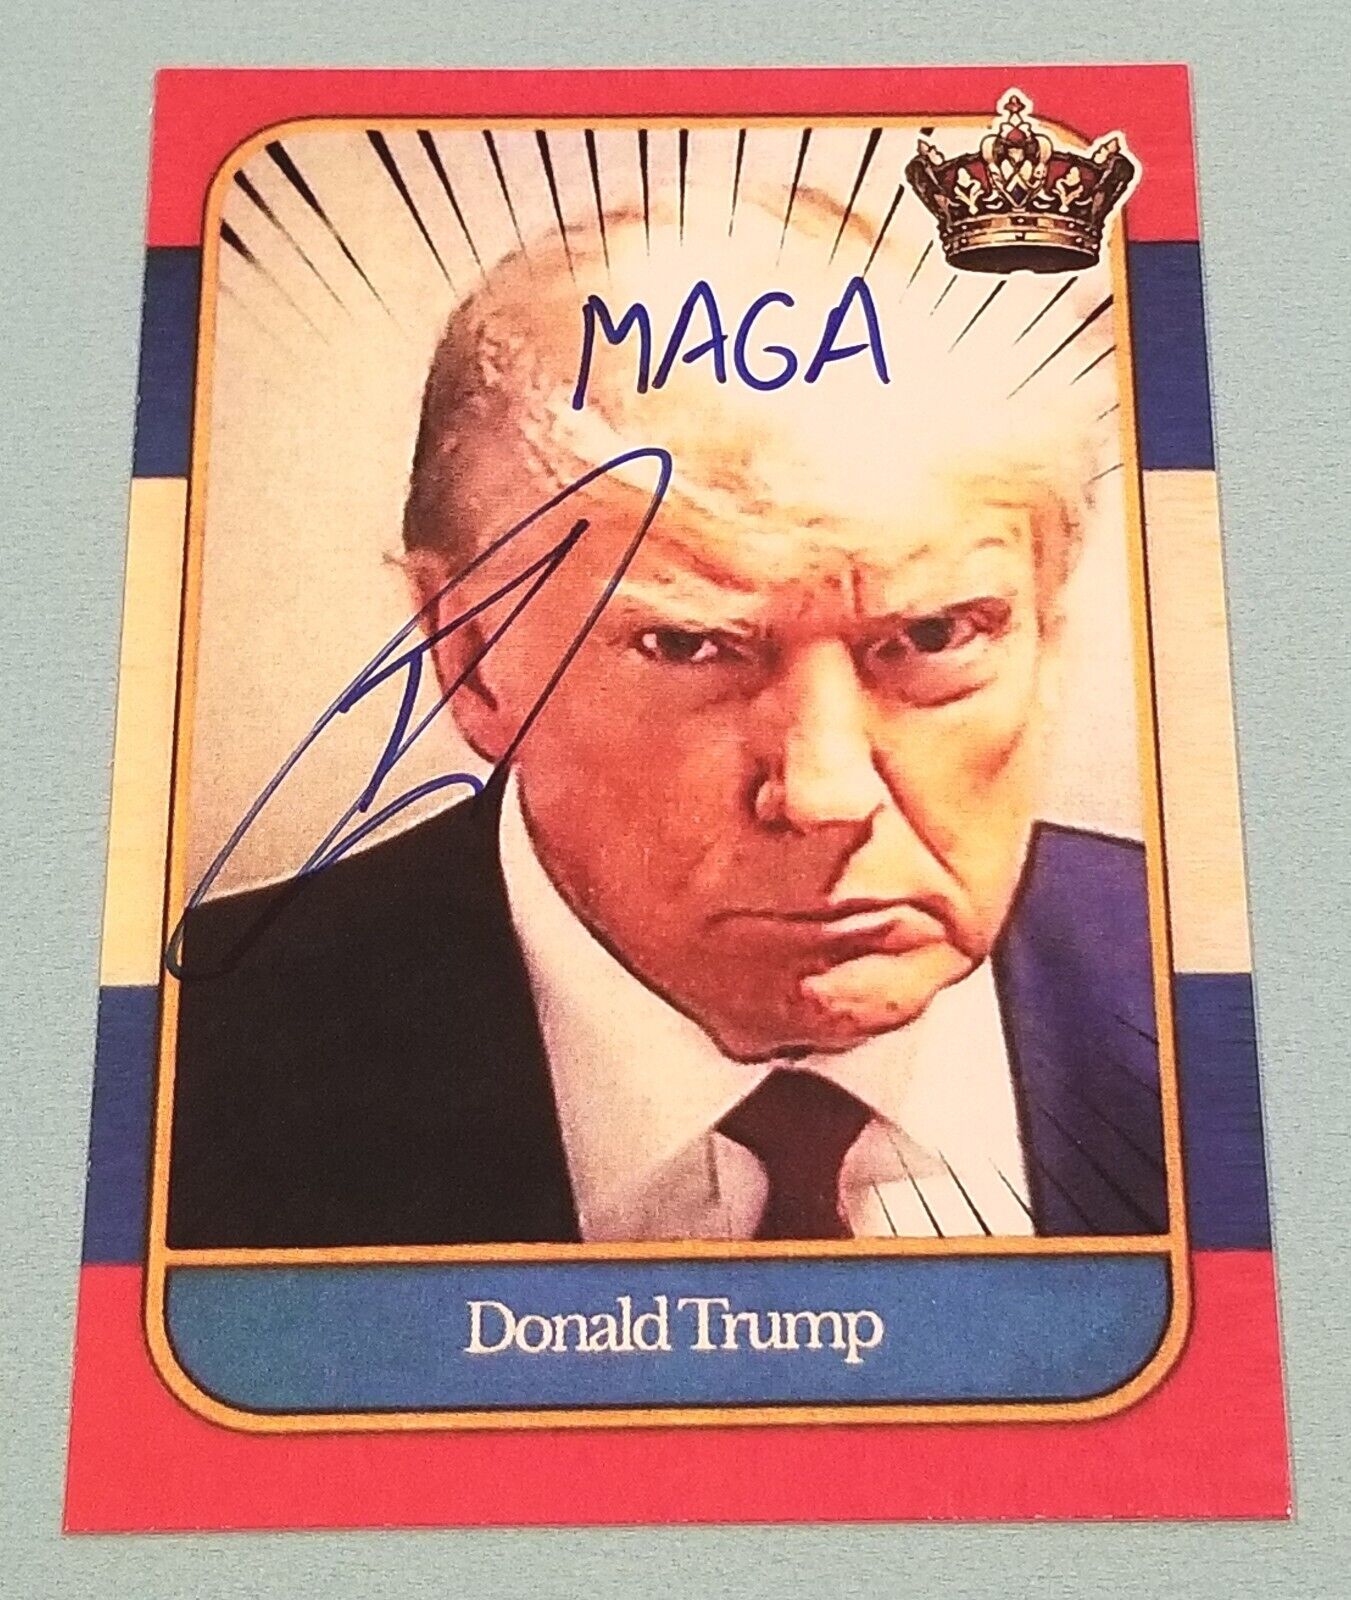 Robert O\'Neill Signed Autographed Donald Trump Mug Shot Card Navy Seal MAGA PSA